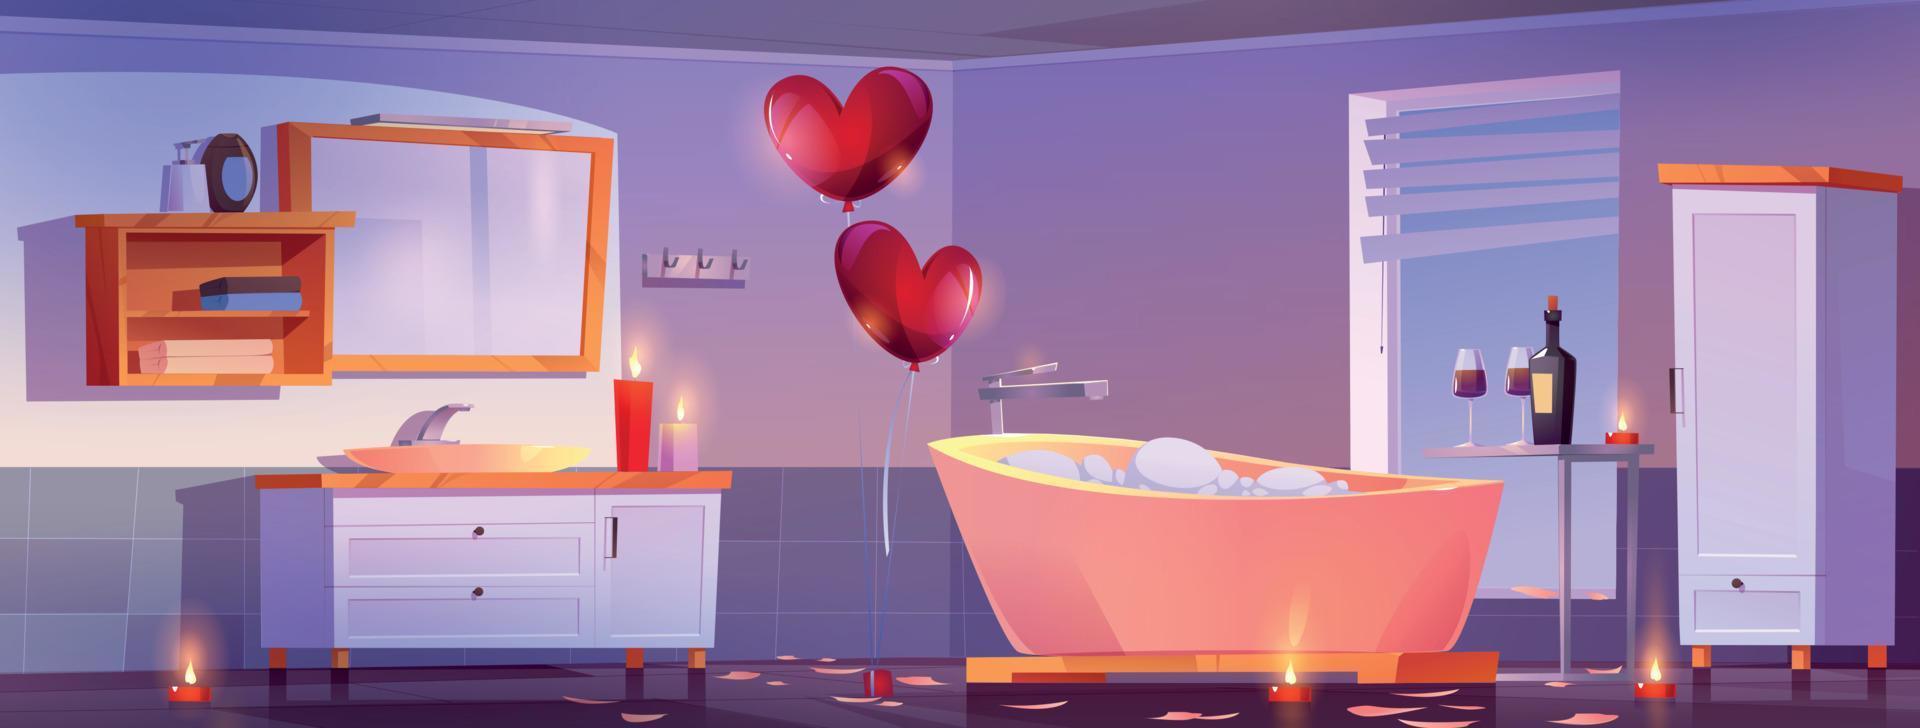 Ambiente de baño romántico para citas en pareja. vector